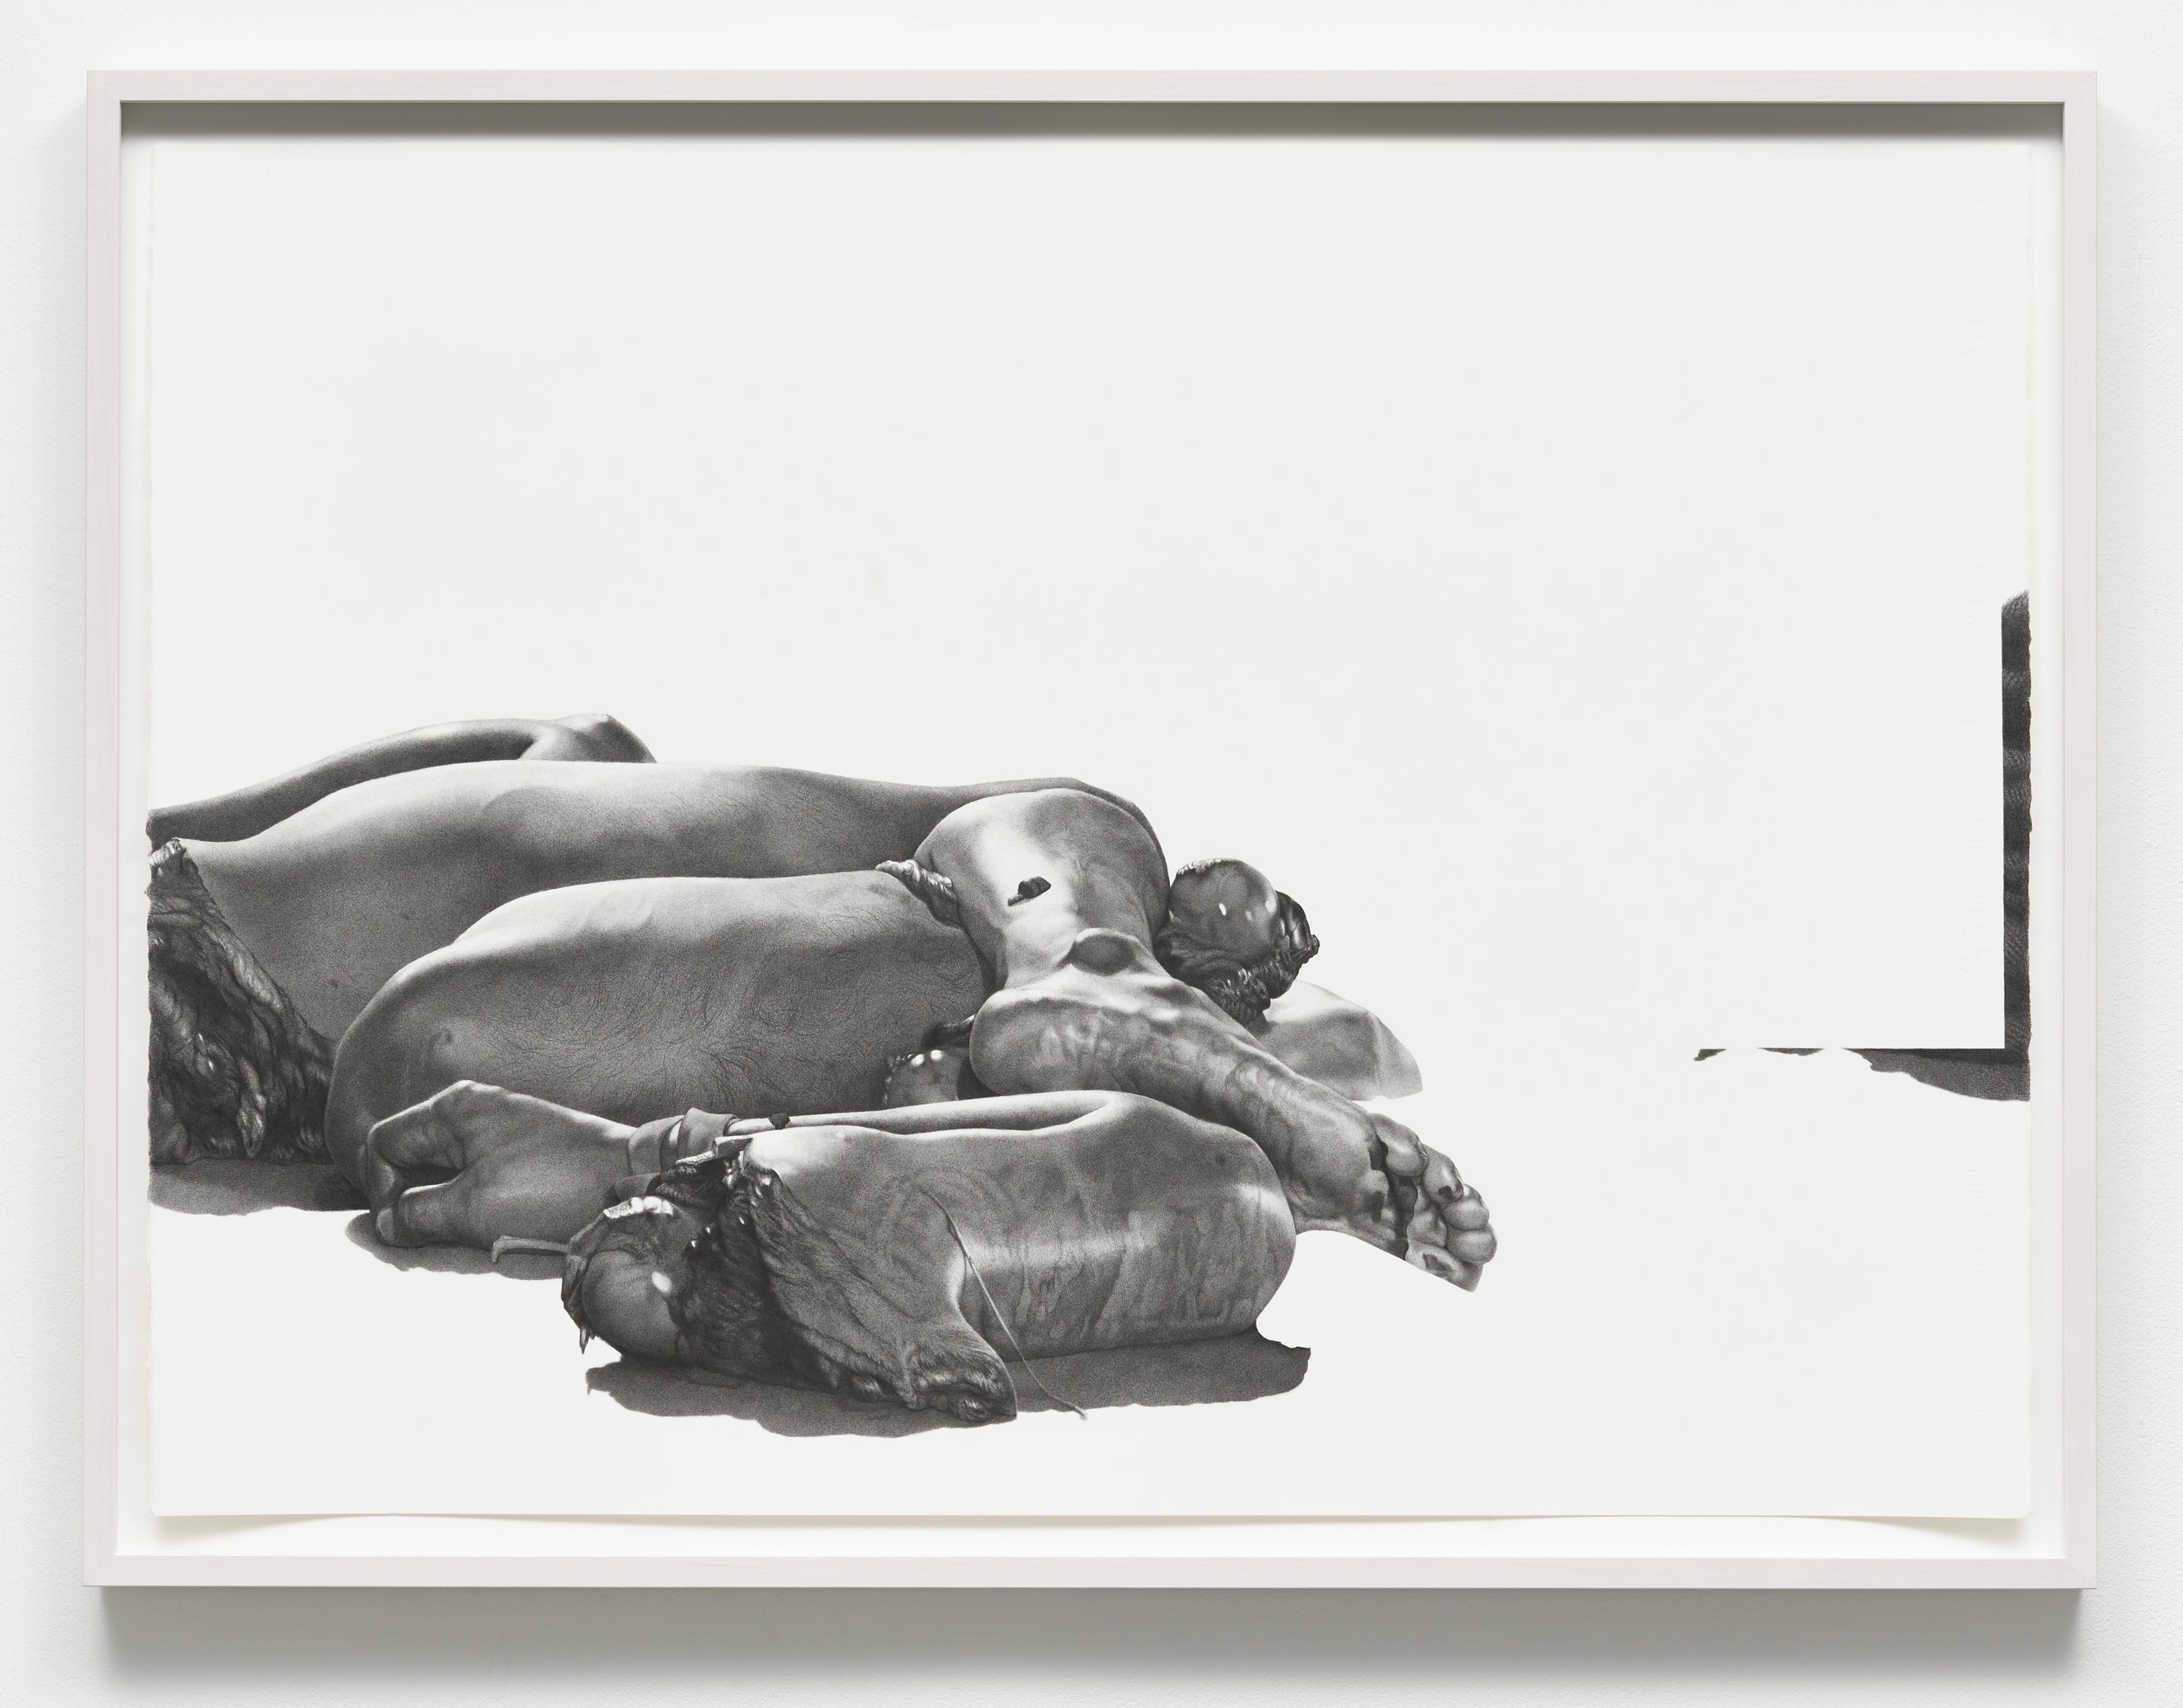  detail - “post-human (unidentified, Cuernavaca, 2011)” graphite on paper, fragment 56 x 76 cm, 2015. 